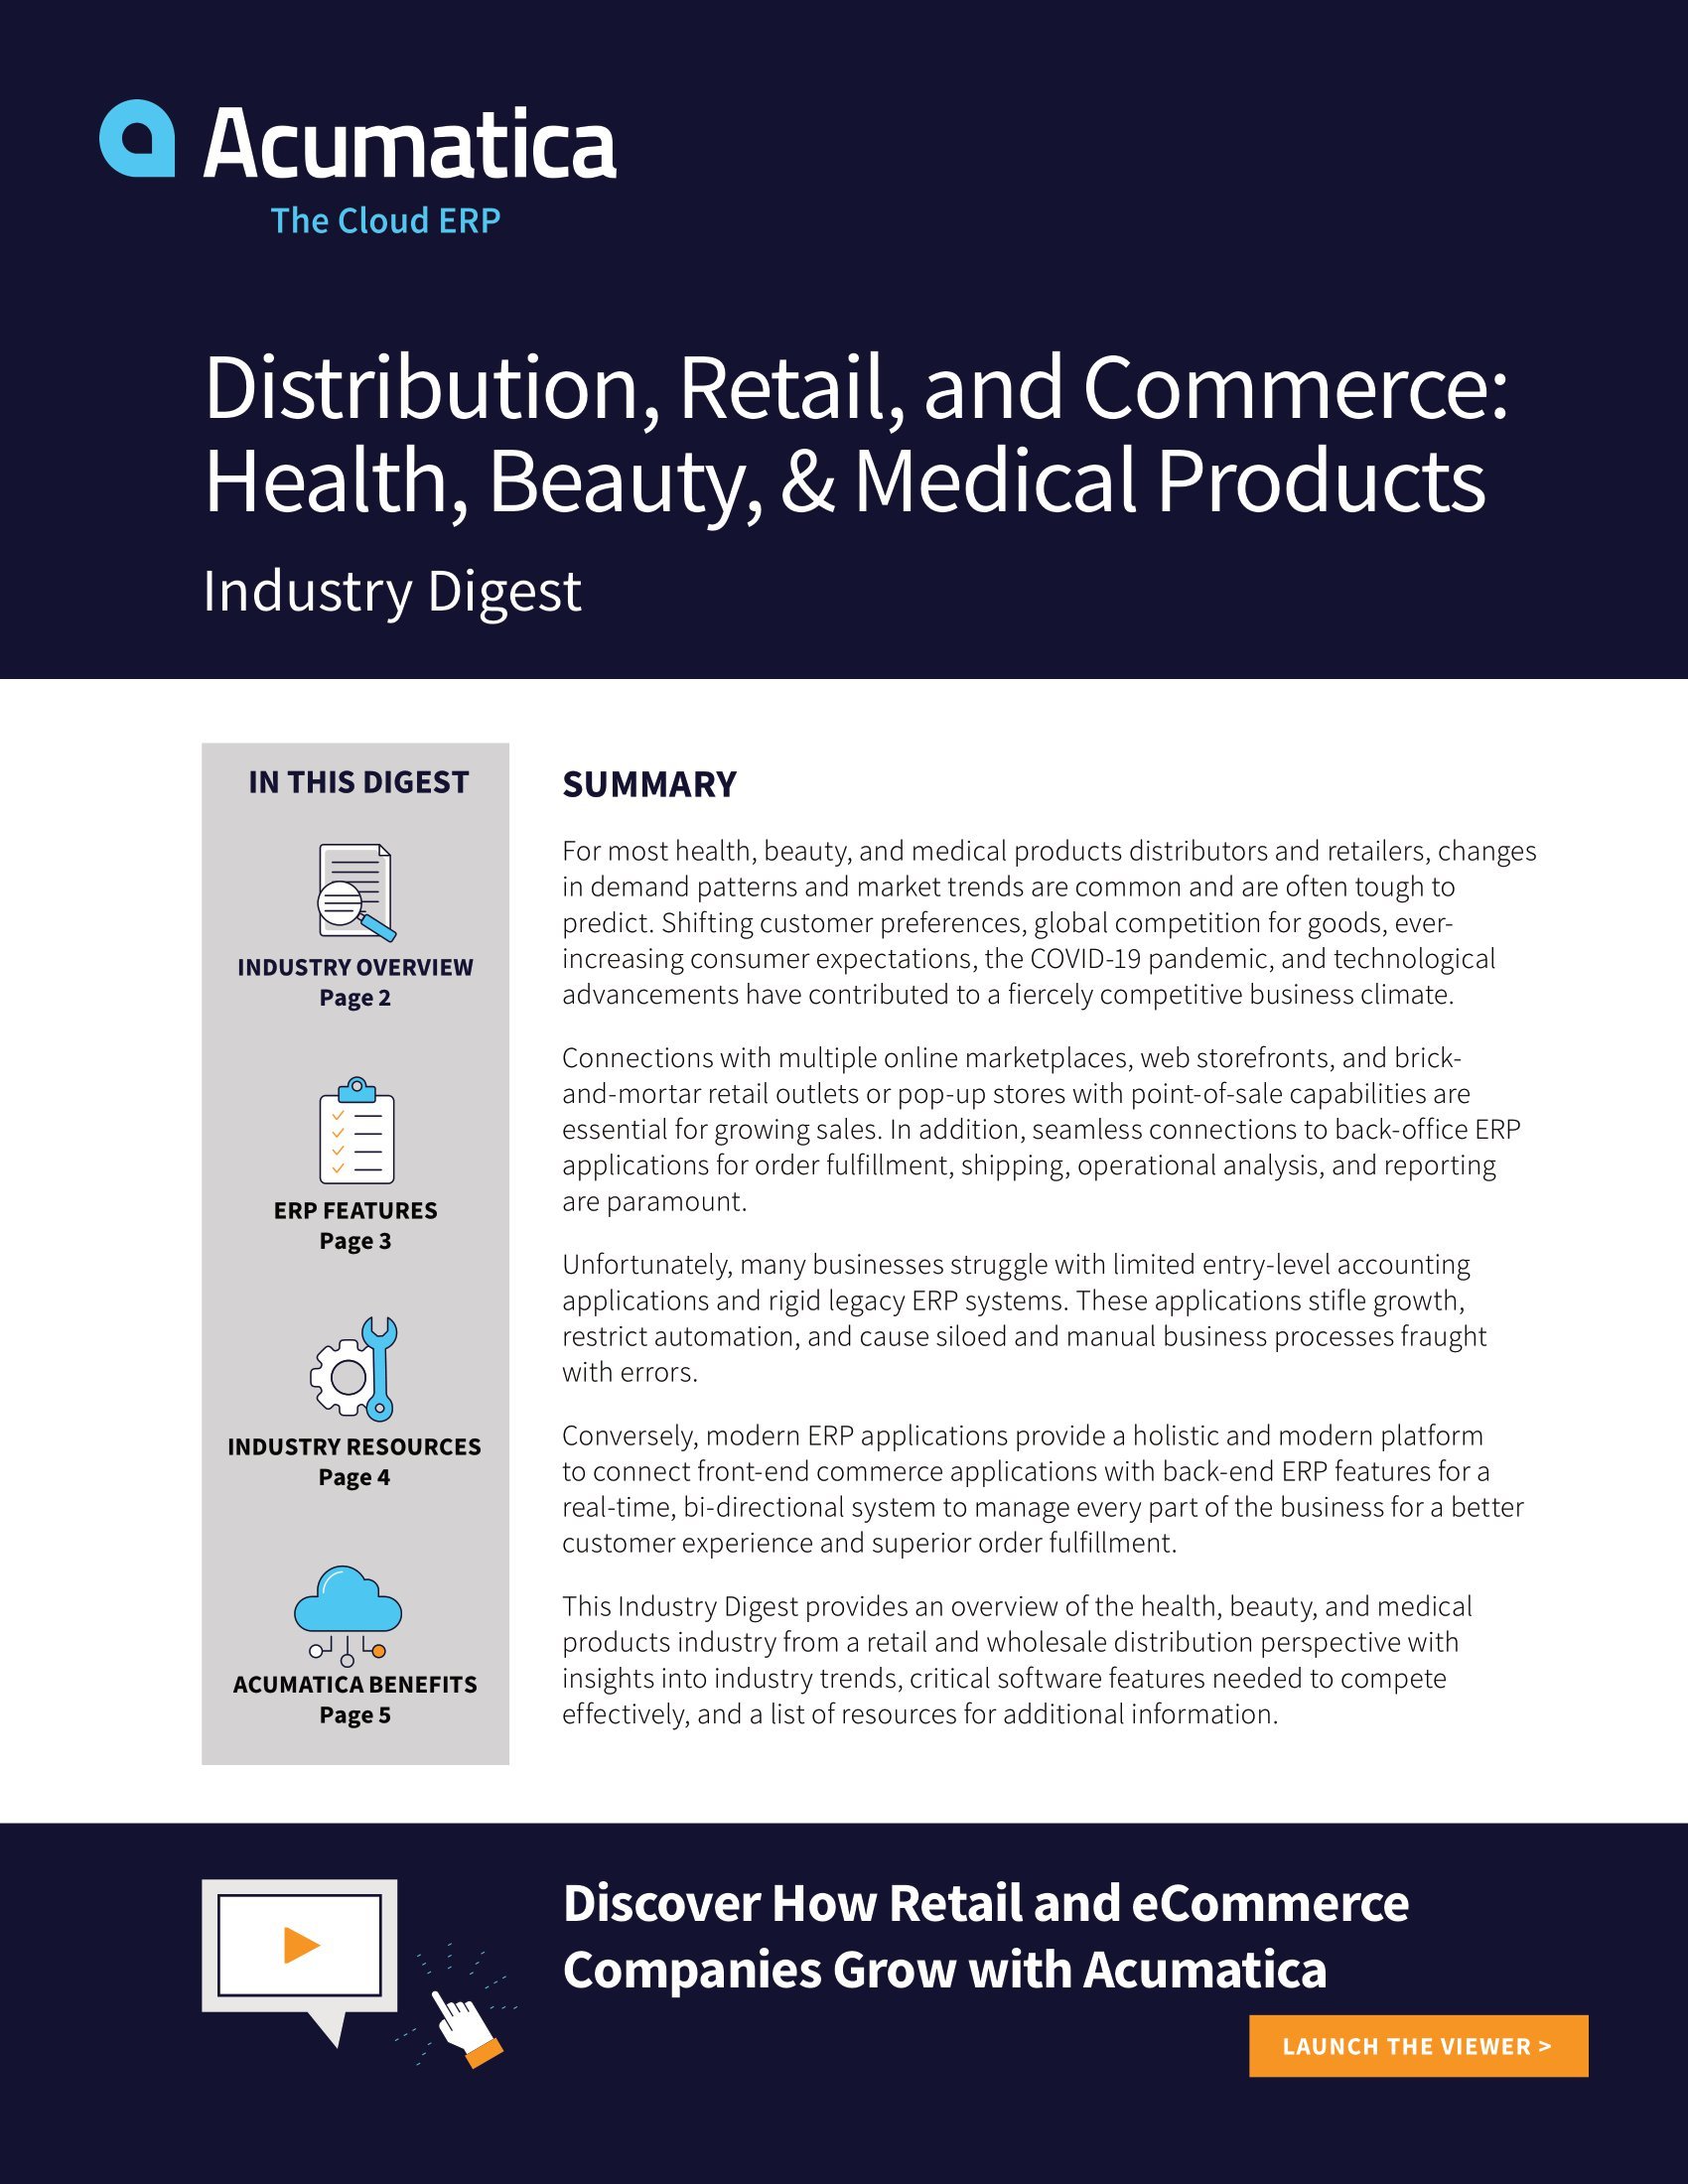 Distributeurs et détaillants de produits médicaux et de santé: attirer et garder les clients à vie avec une application ERP moderne